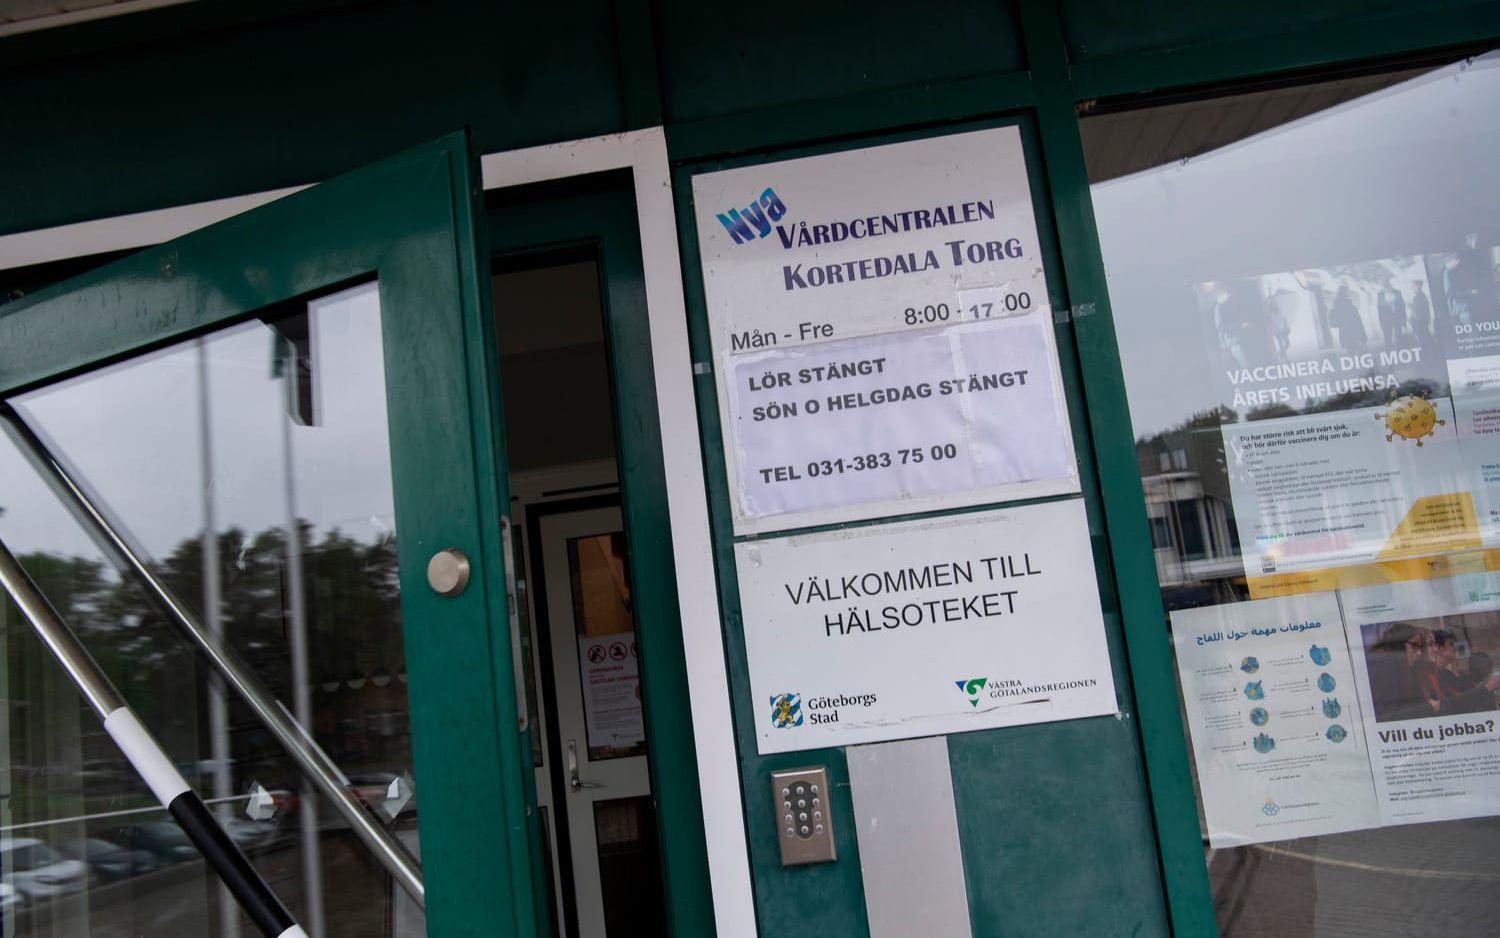 Nya Vårdcentralen vid Kortedala Torg håller fortsatt öppet och bedriver enligt Västra Götalandsregionen patientsäker vård.